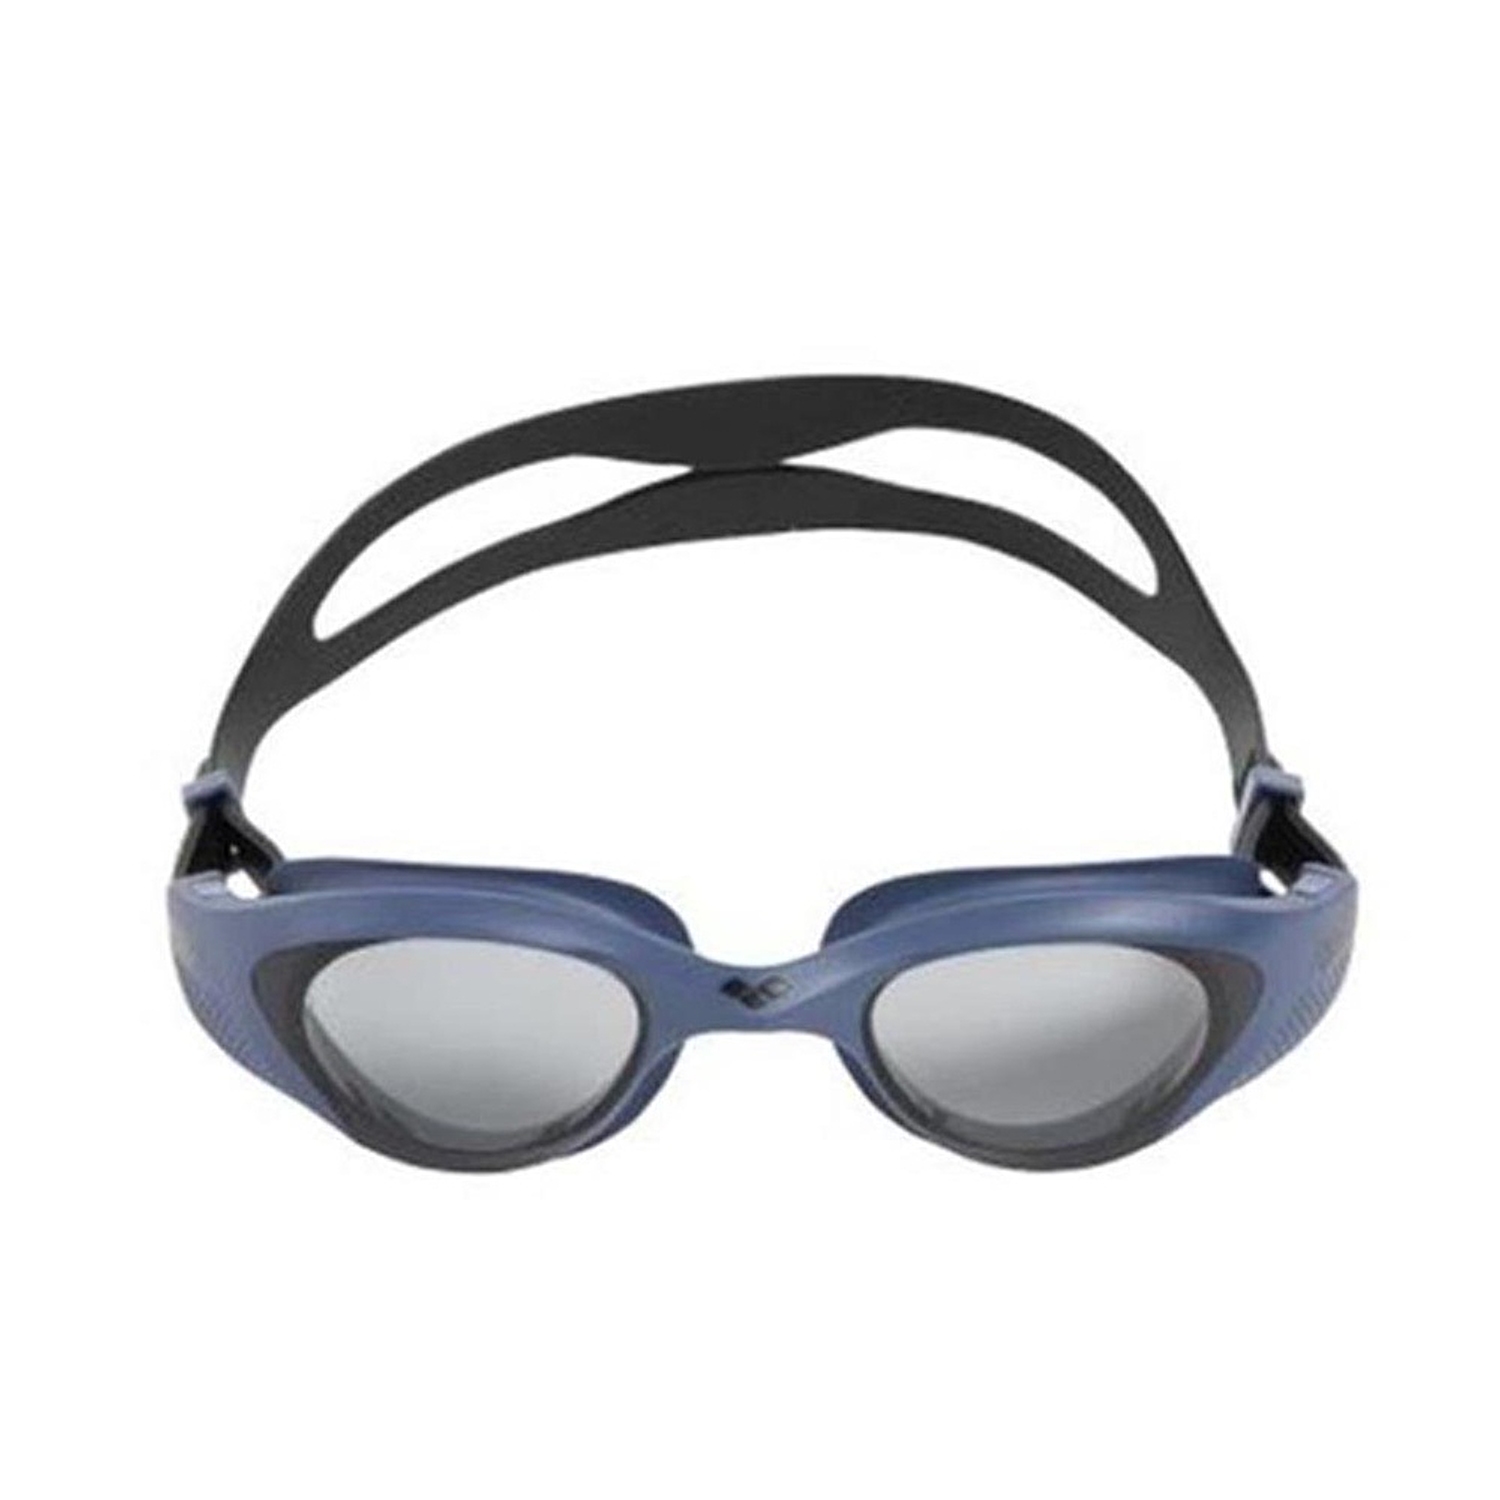 The One Unisex Yüzücü Gözlüğü